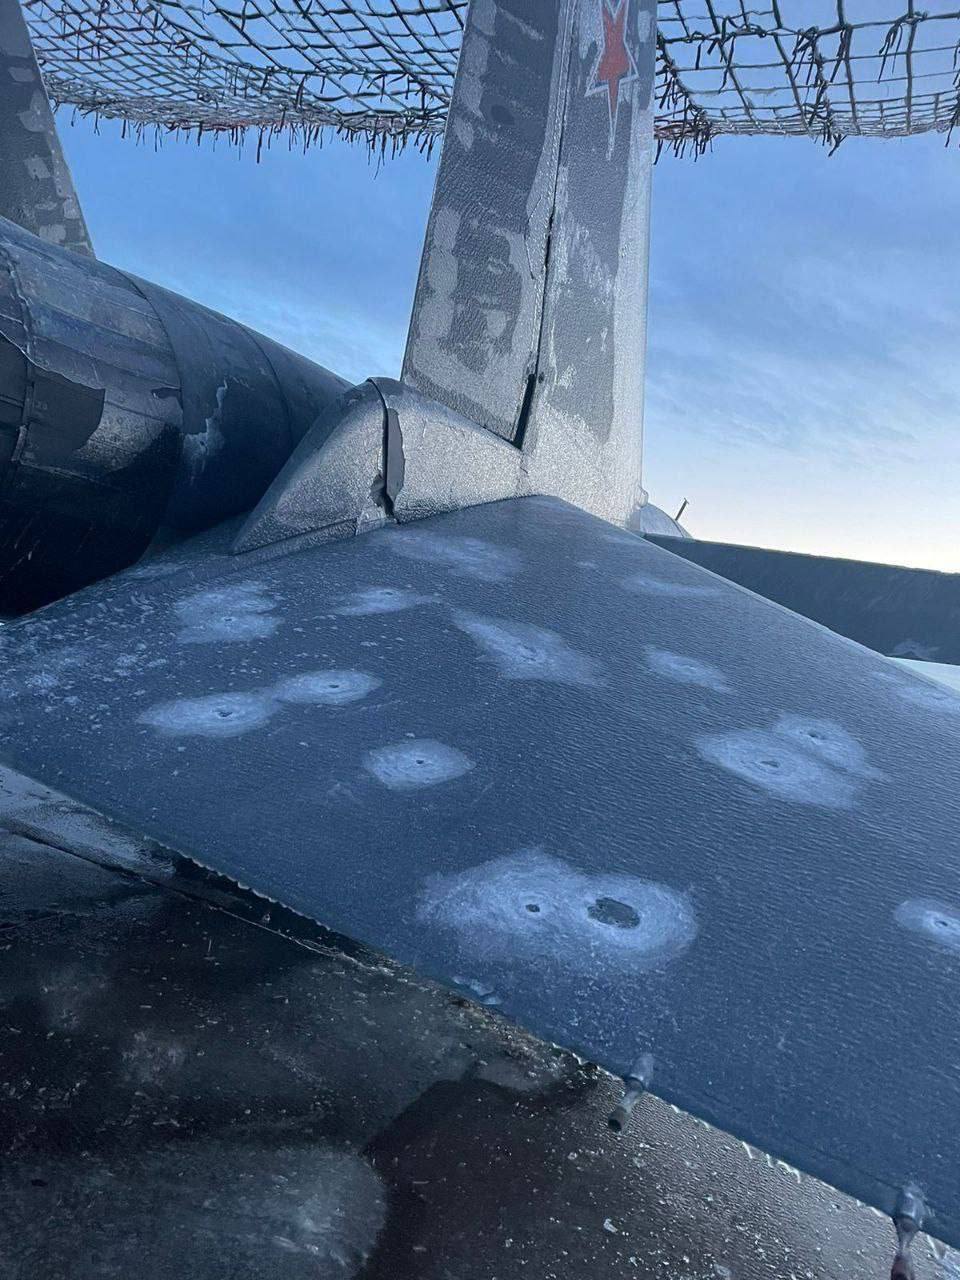 Поврежден минимум один самолет Су-34: появились фото последствий атаки дронов по аэродрому в Ростовской области